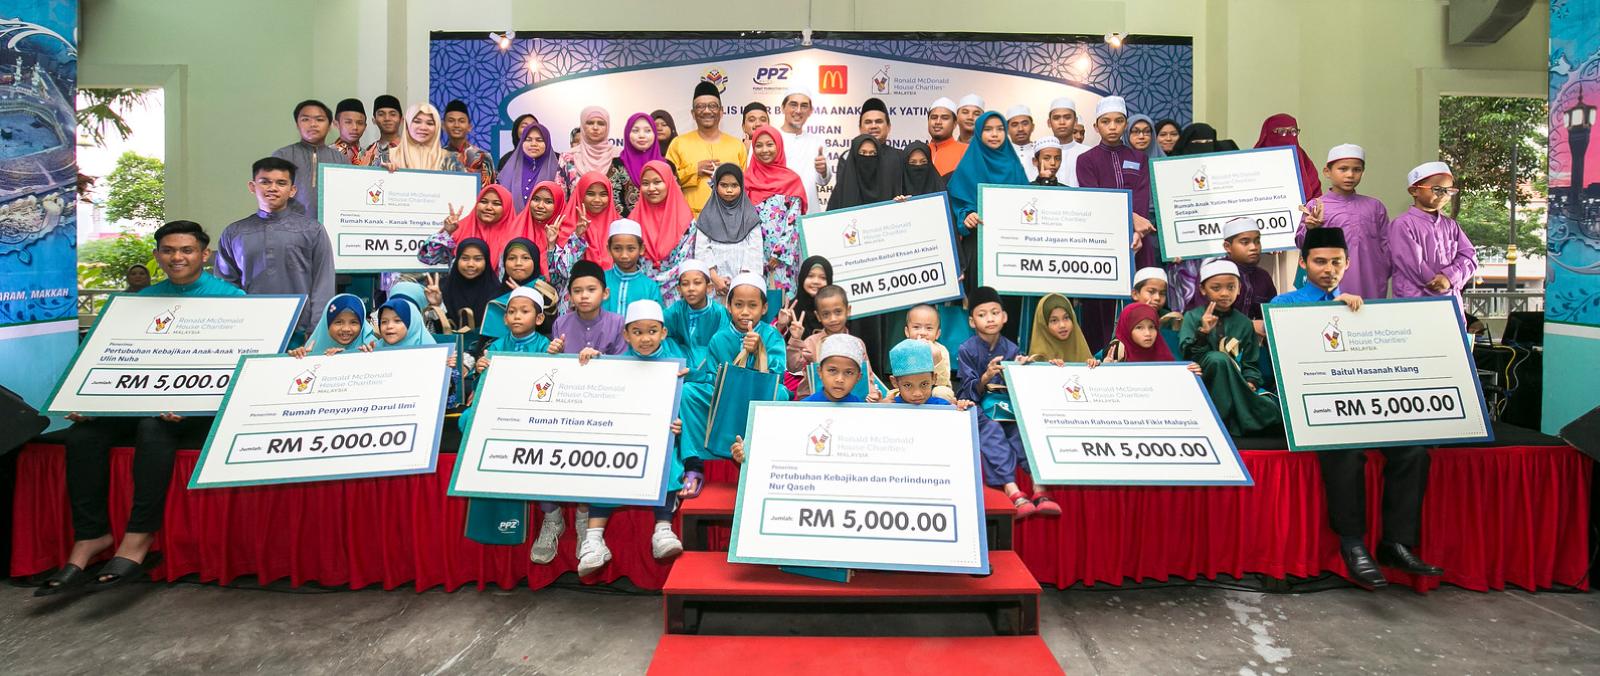 Majlis Iftar bersama anak-anak yatim anjuran McDonald’s Malaysia dan RMHC dengan kerjasama PPZ-MAIWP's image'